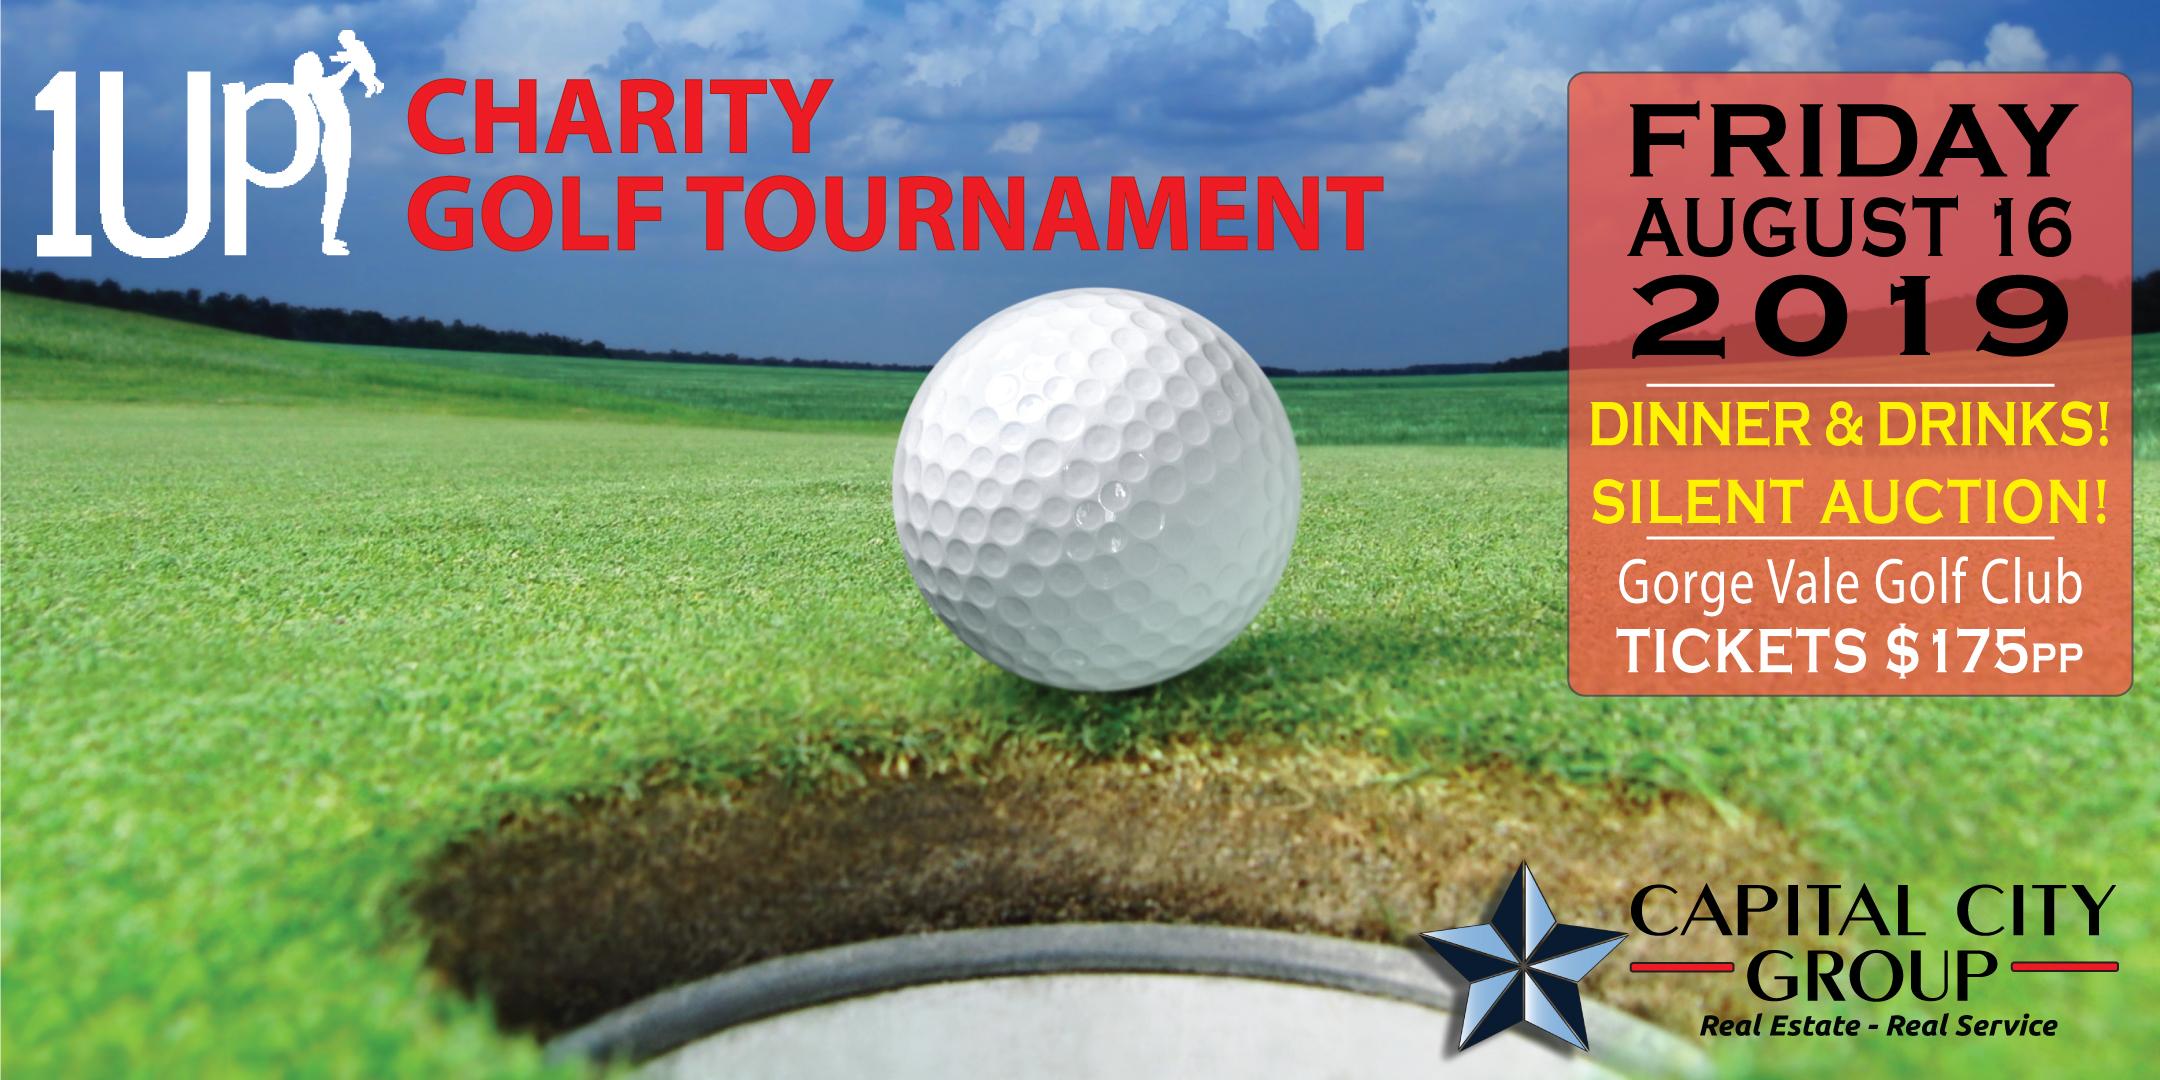 1Up Charity Golf Tournament & Banquet